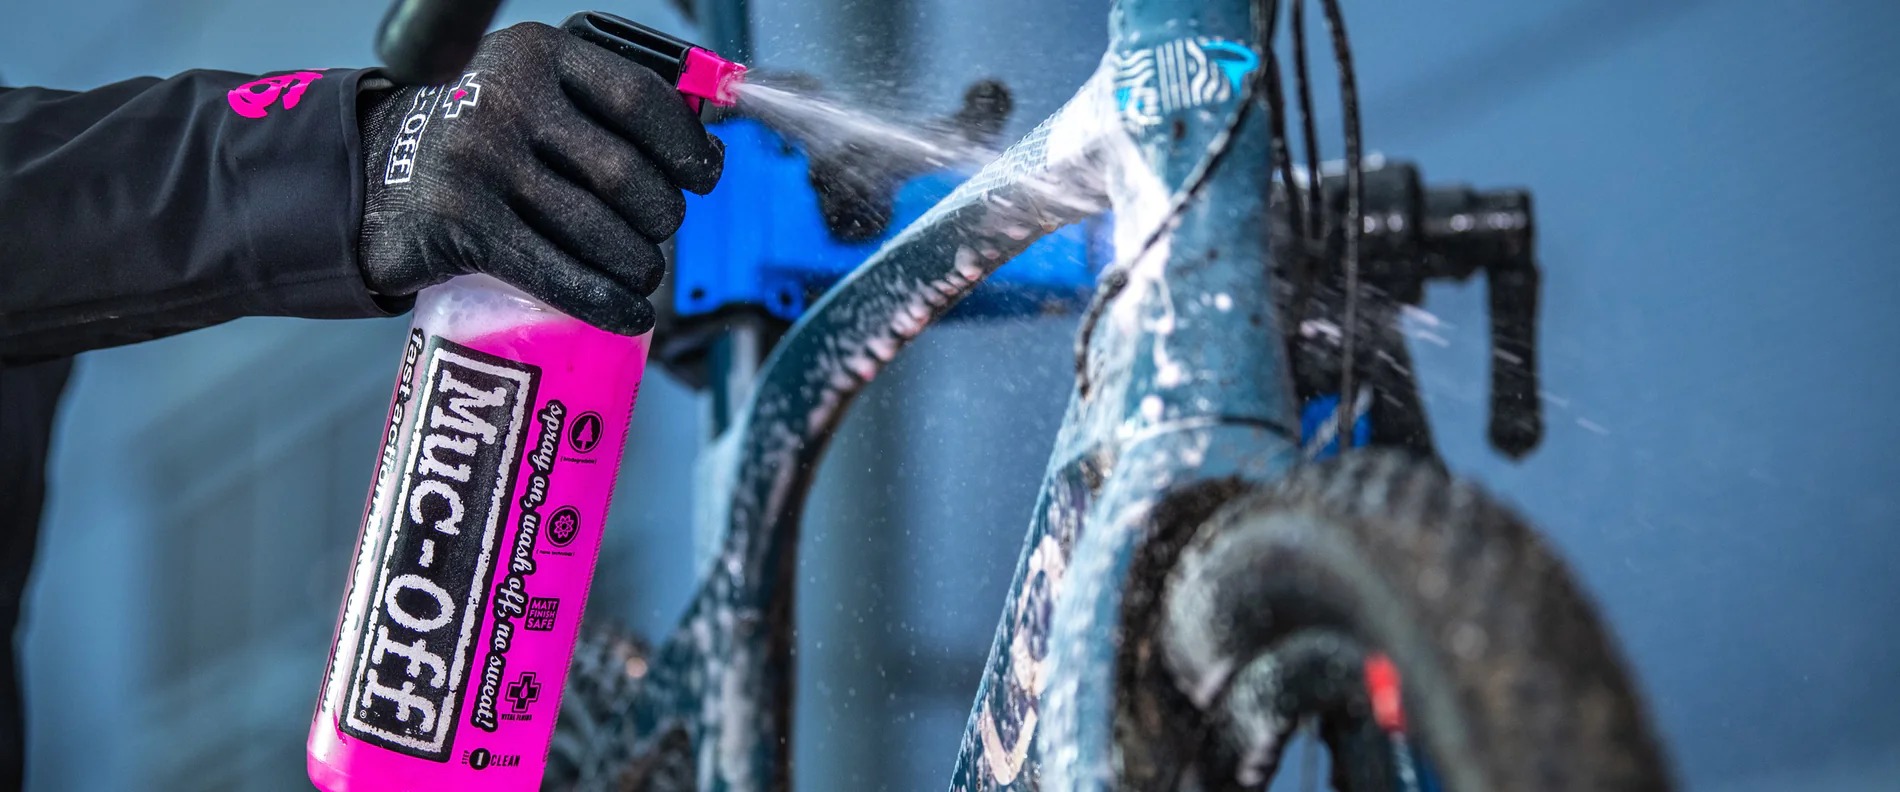 7-best-bike-cleaning-spray